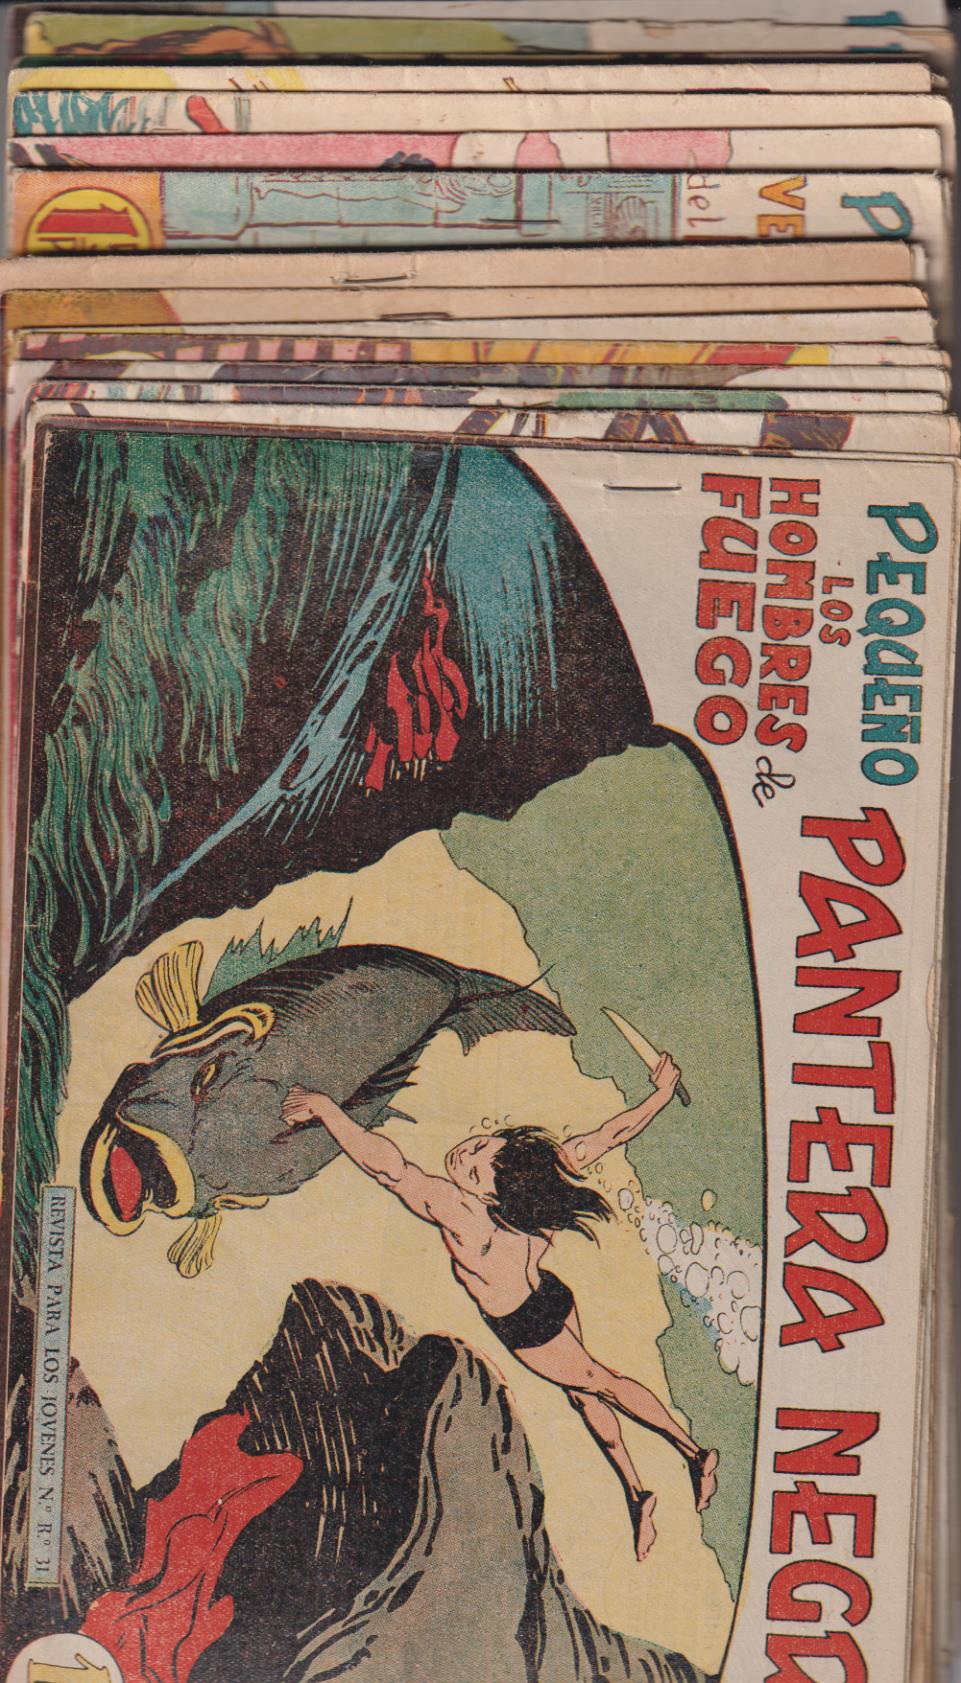 Pequeño Pantera Negra. Maga 1958. Lote de 94 ejemplares entre el 126 y 329